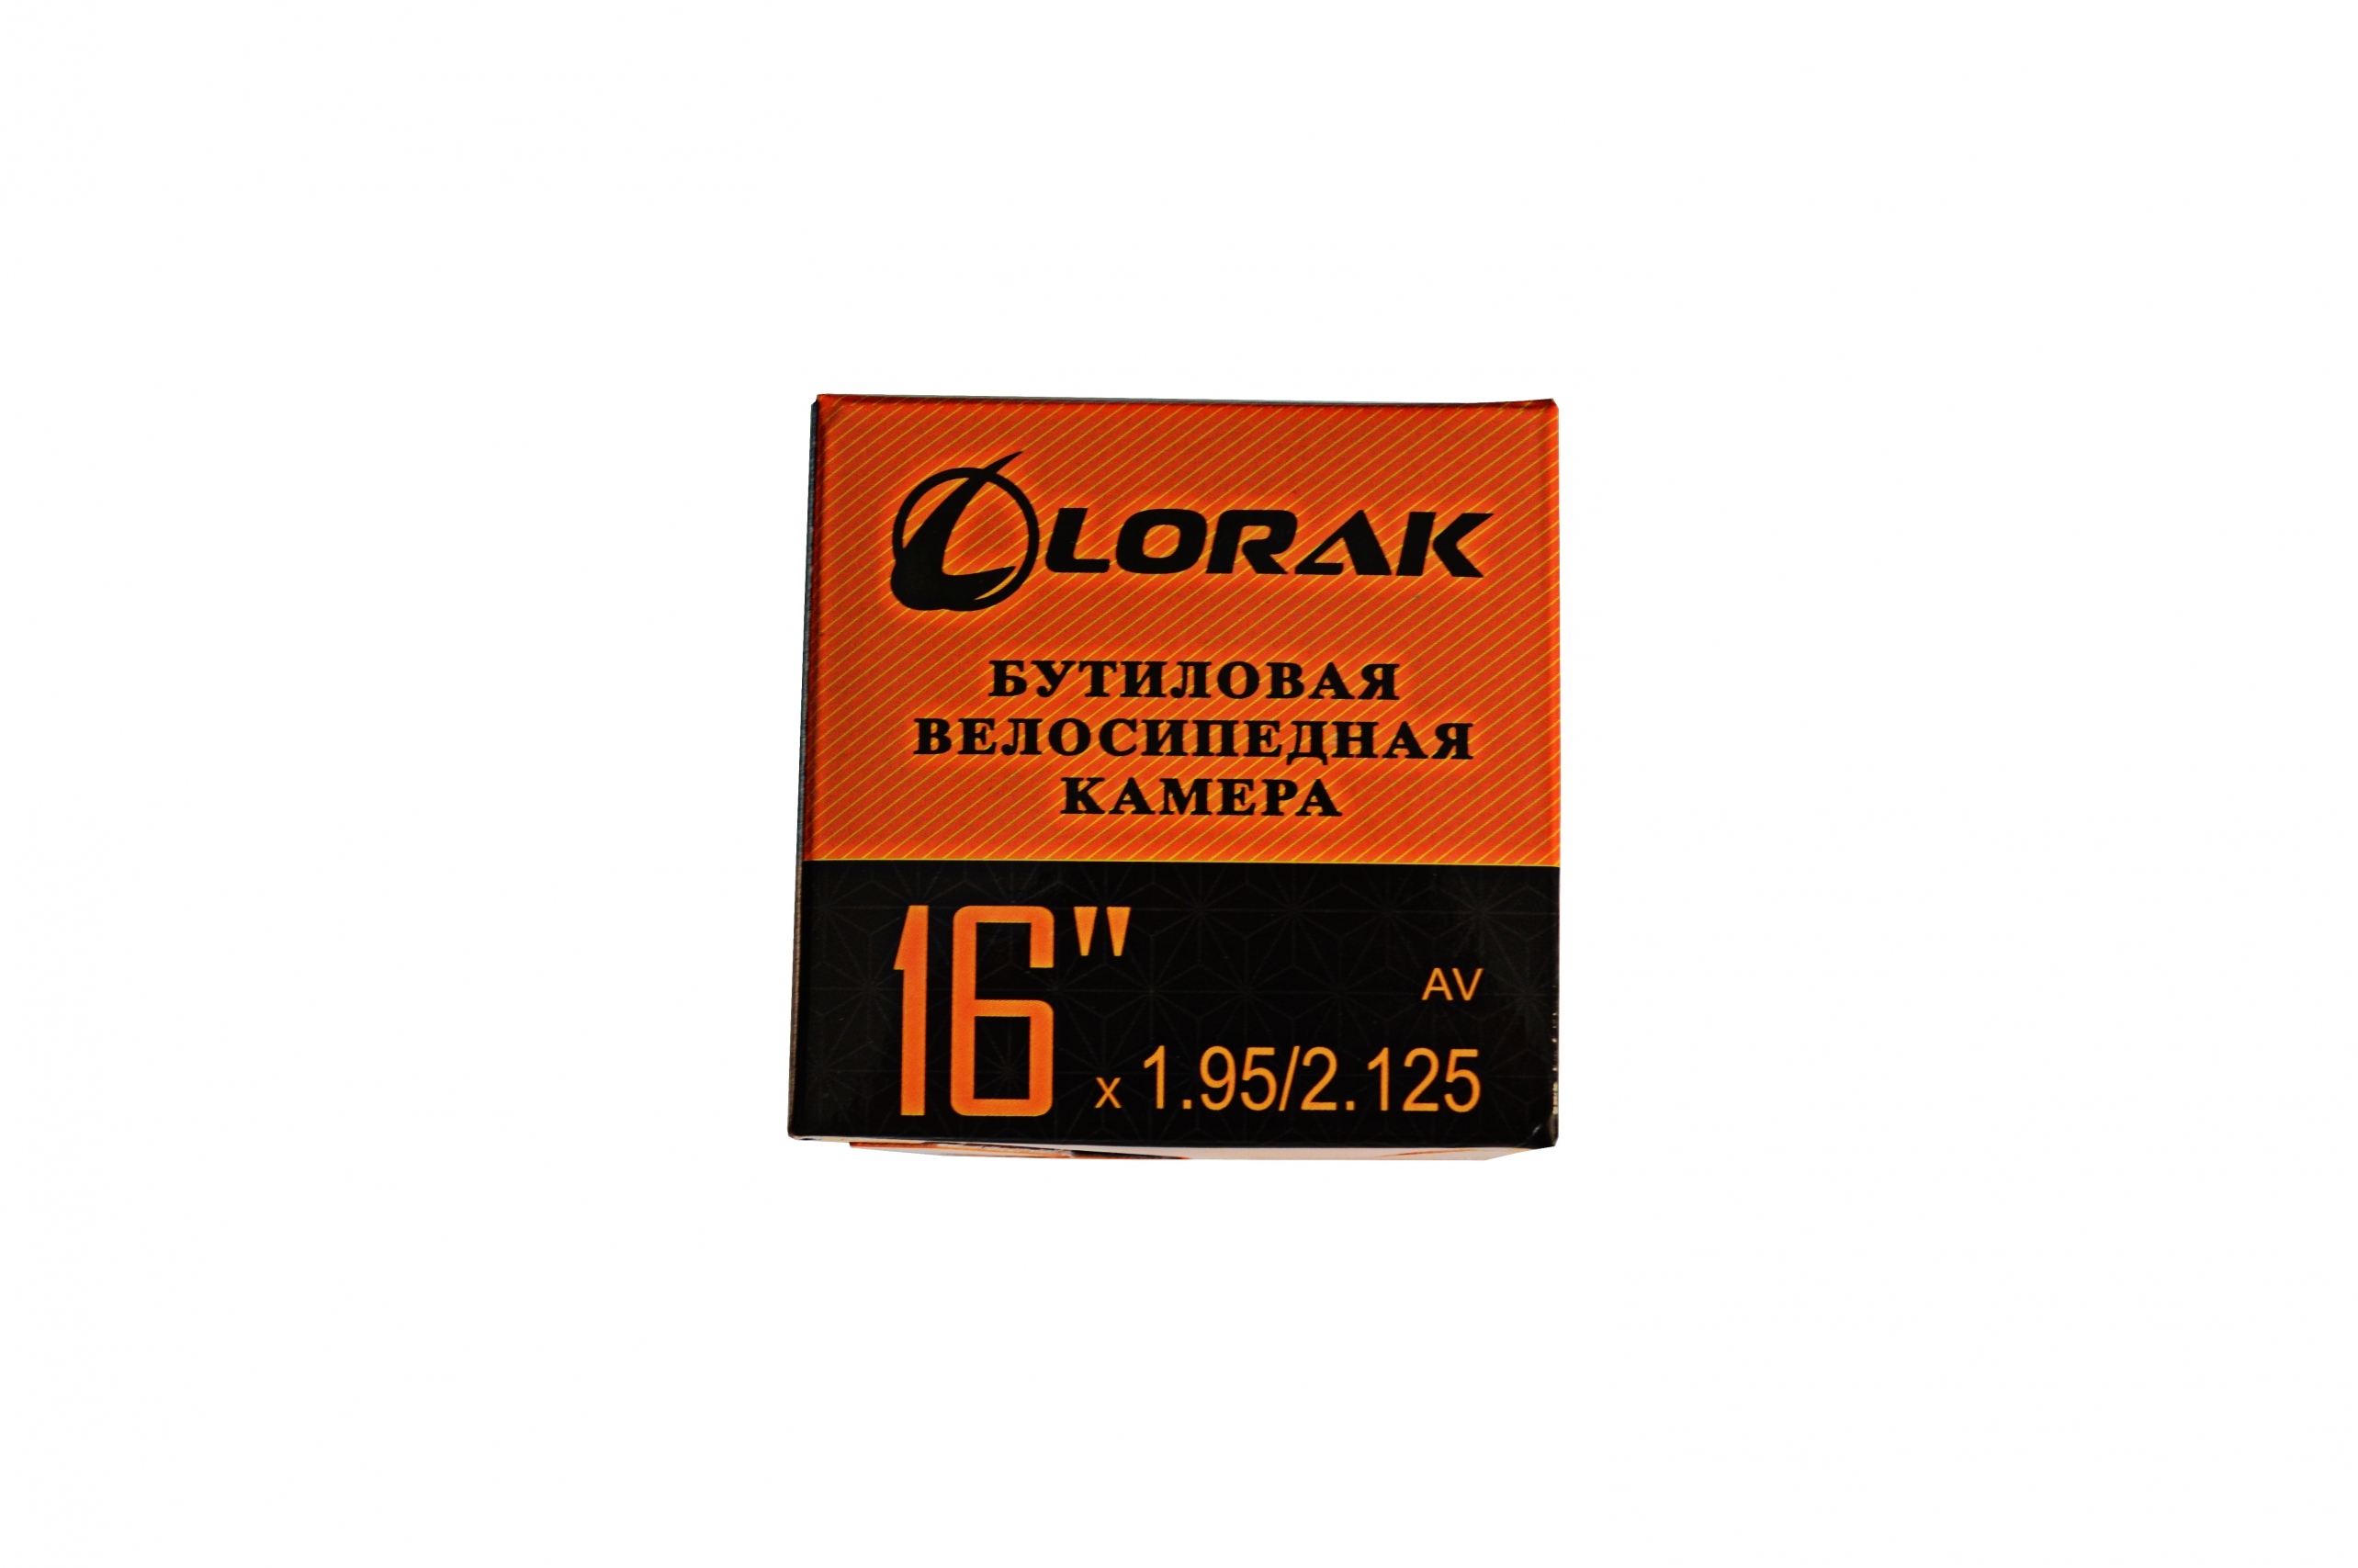 Камера Lorak 16*1,95/2,125 AV32MM 16501